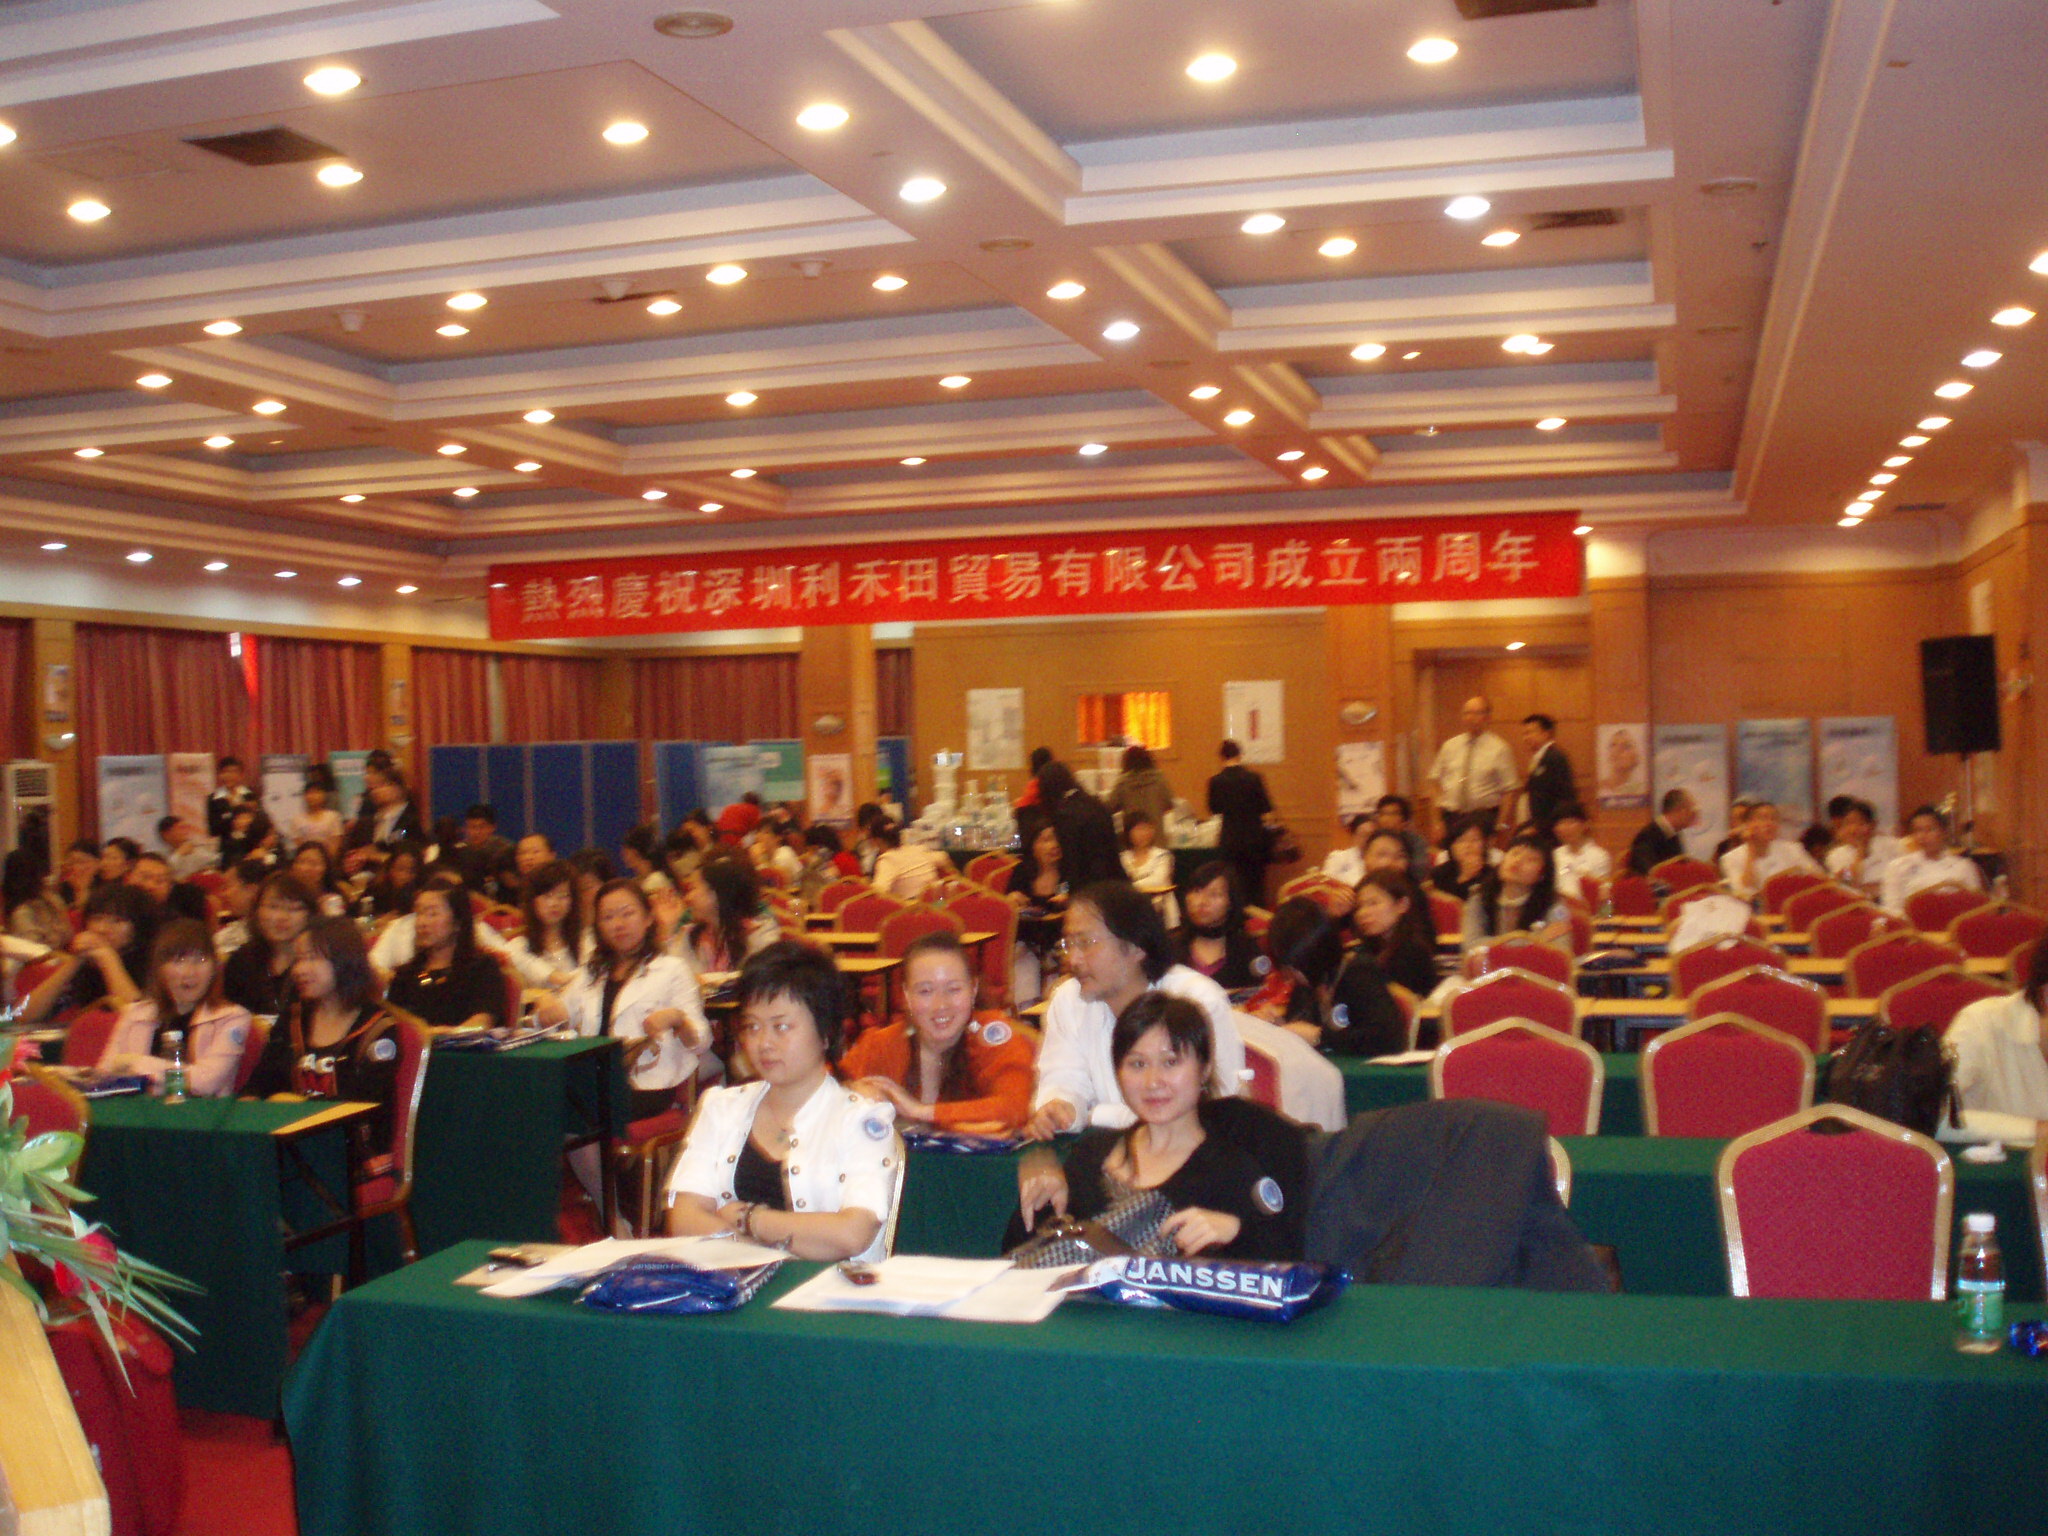 Event in Shenzhen with Dr. Sacher 2008